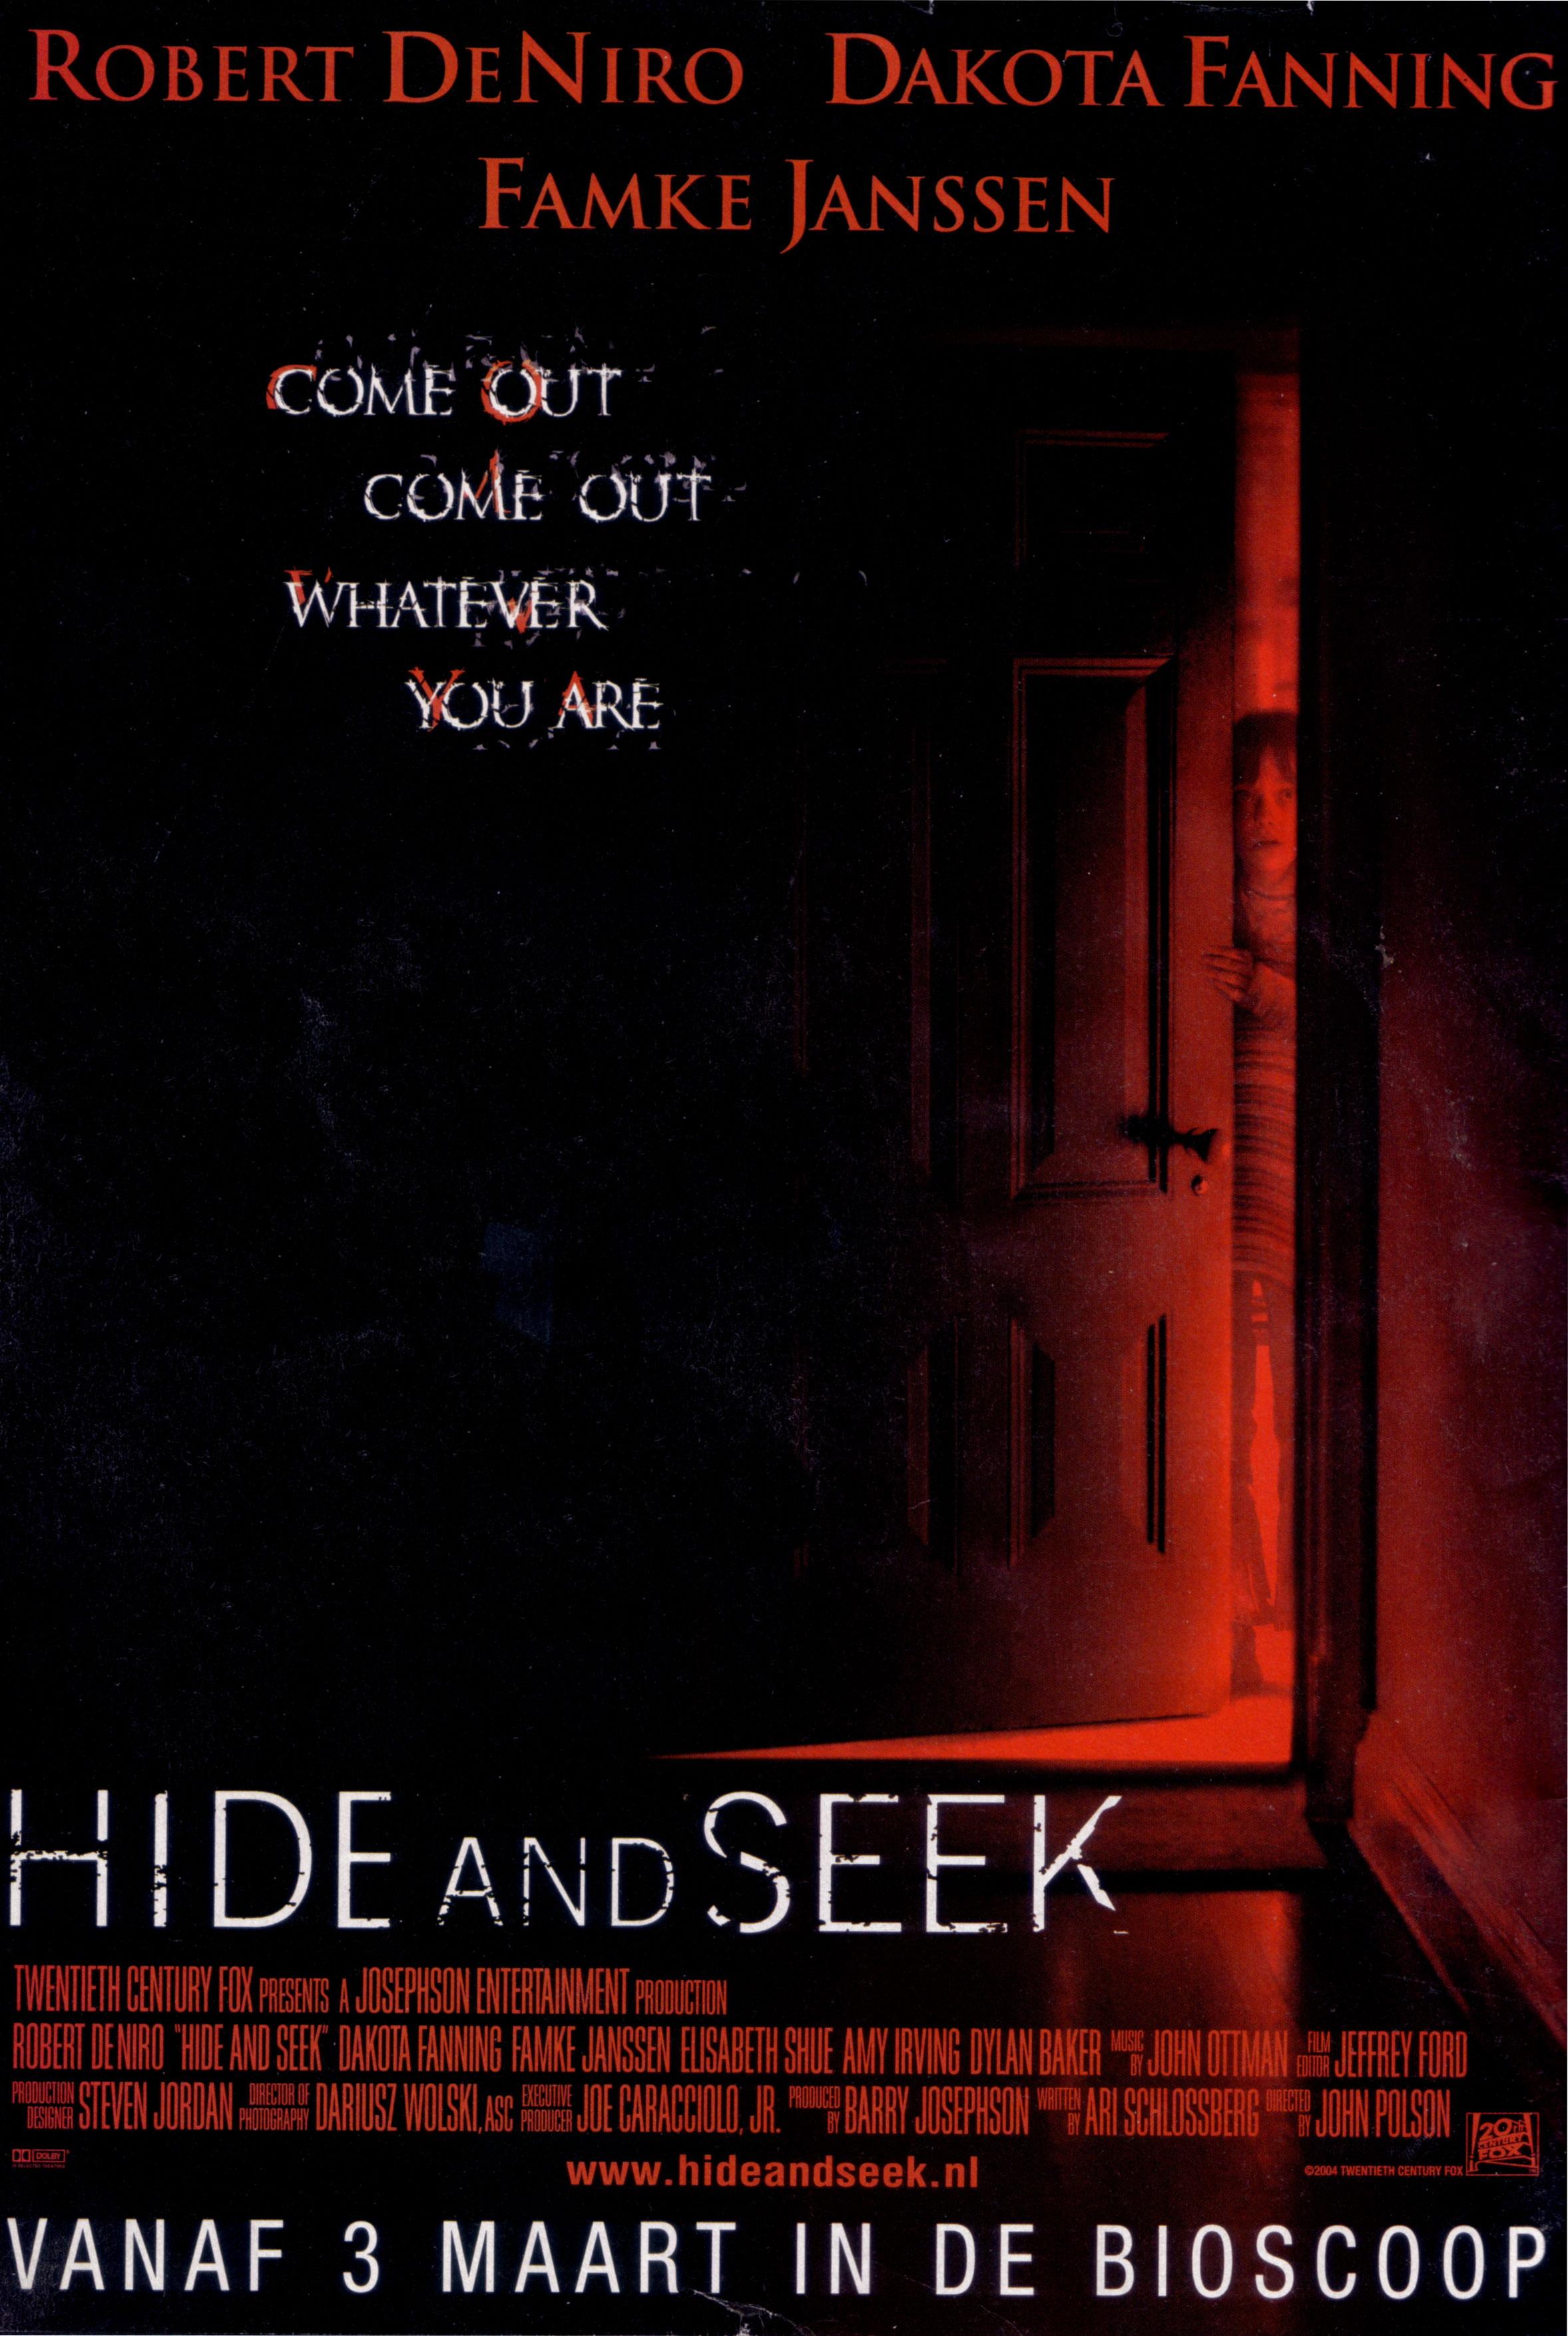 Hide and seek, 2005. Игра в ПРЯТКИ (2005) Постер. Hide and seek ПРЯТКИ игра. Игра в прятки отзывы